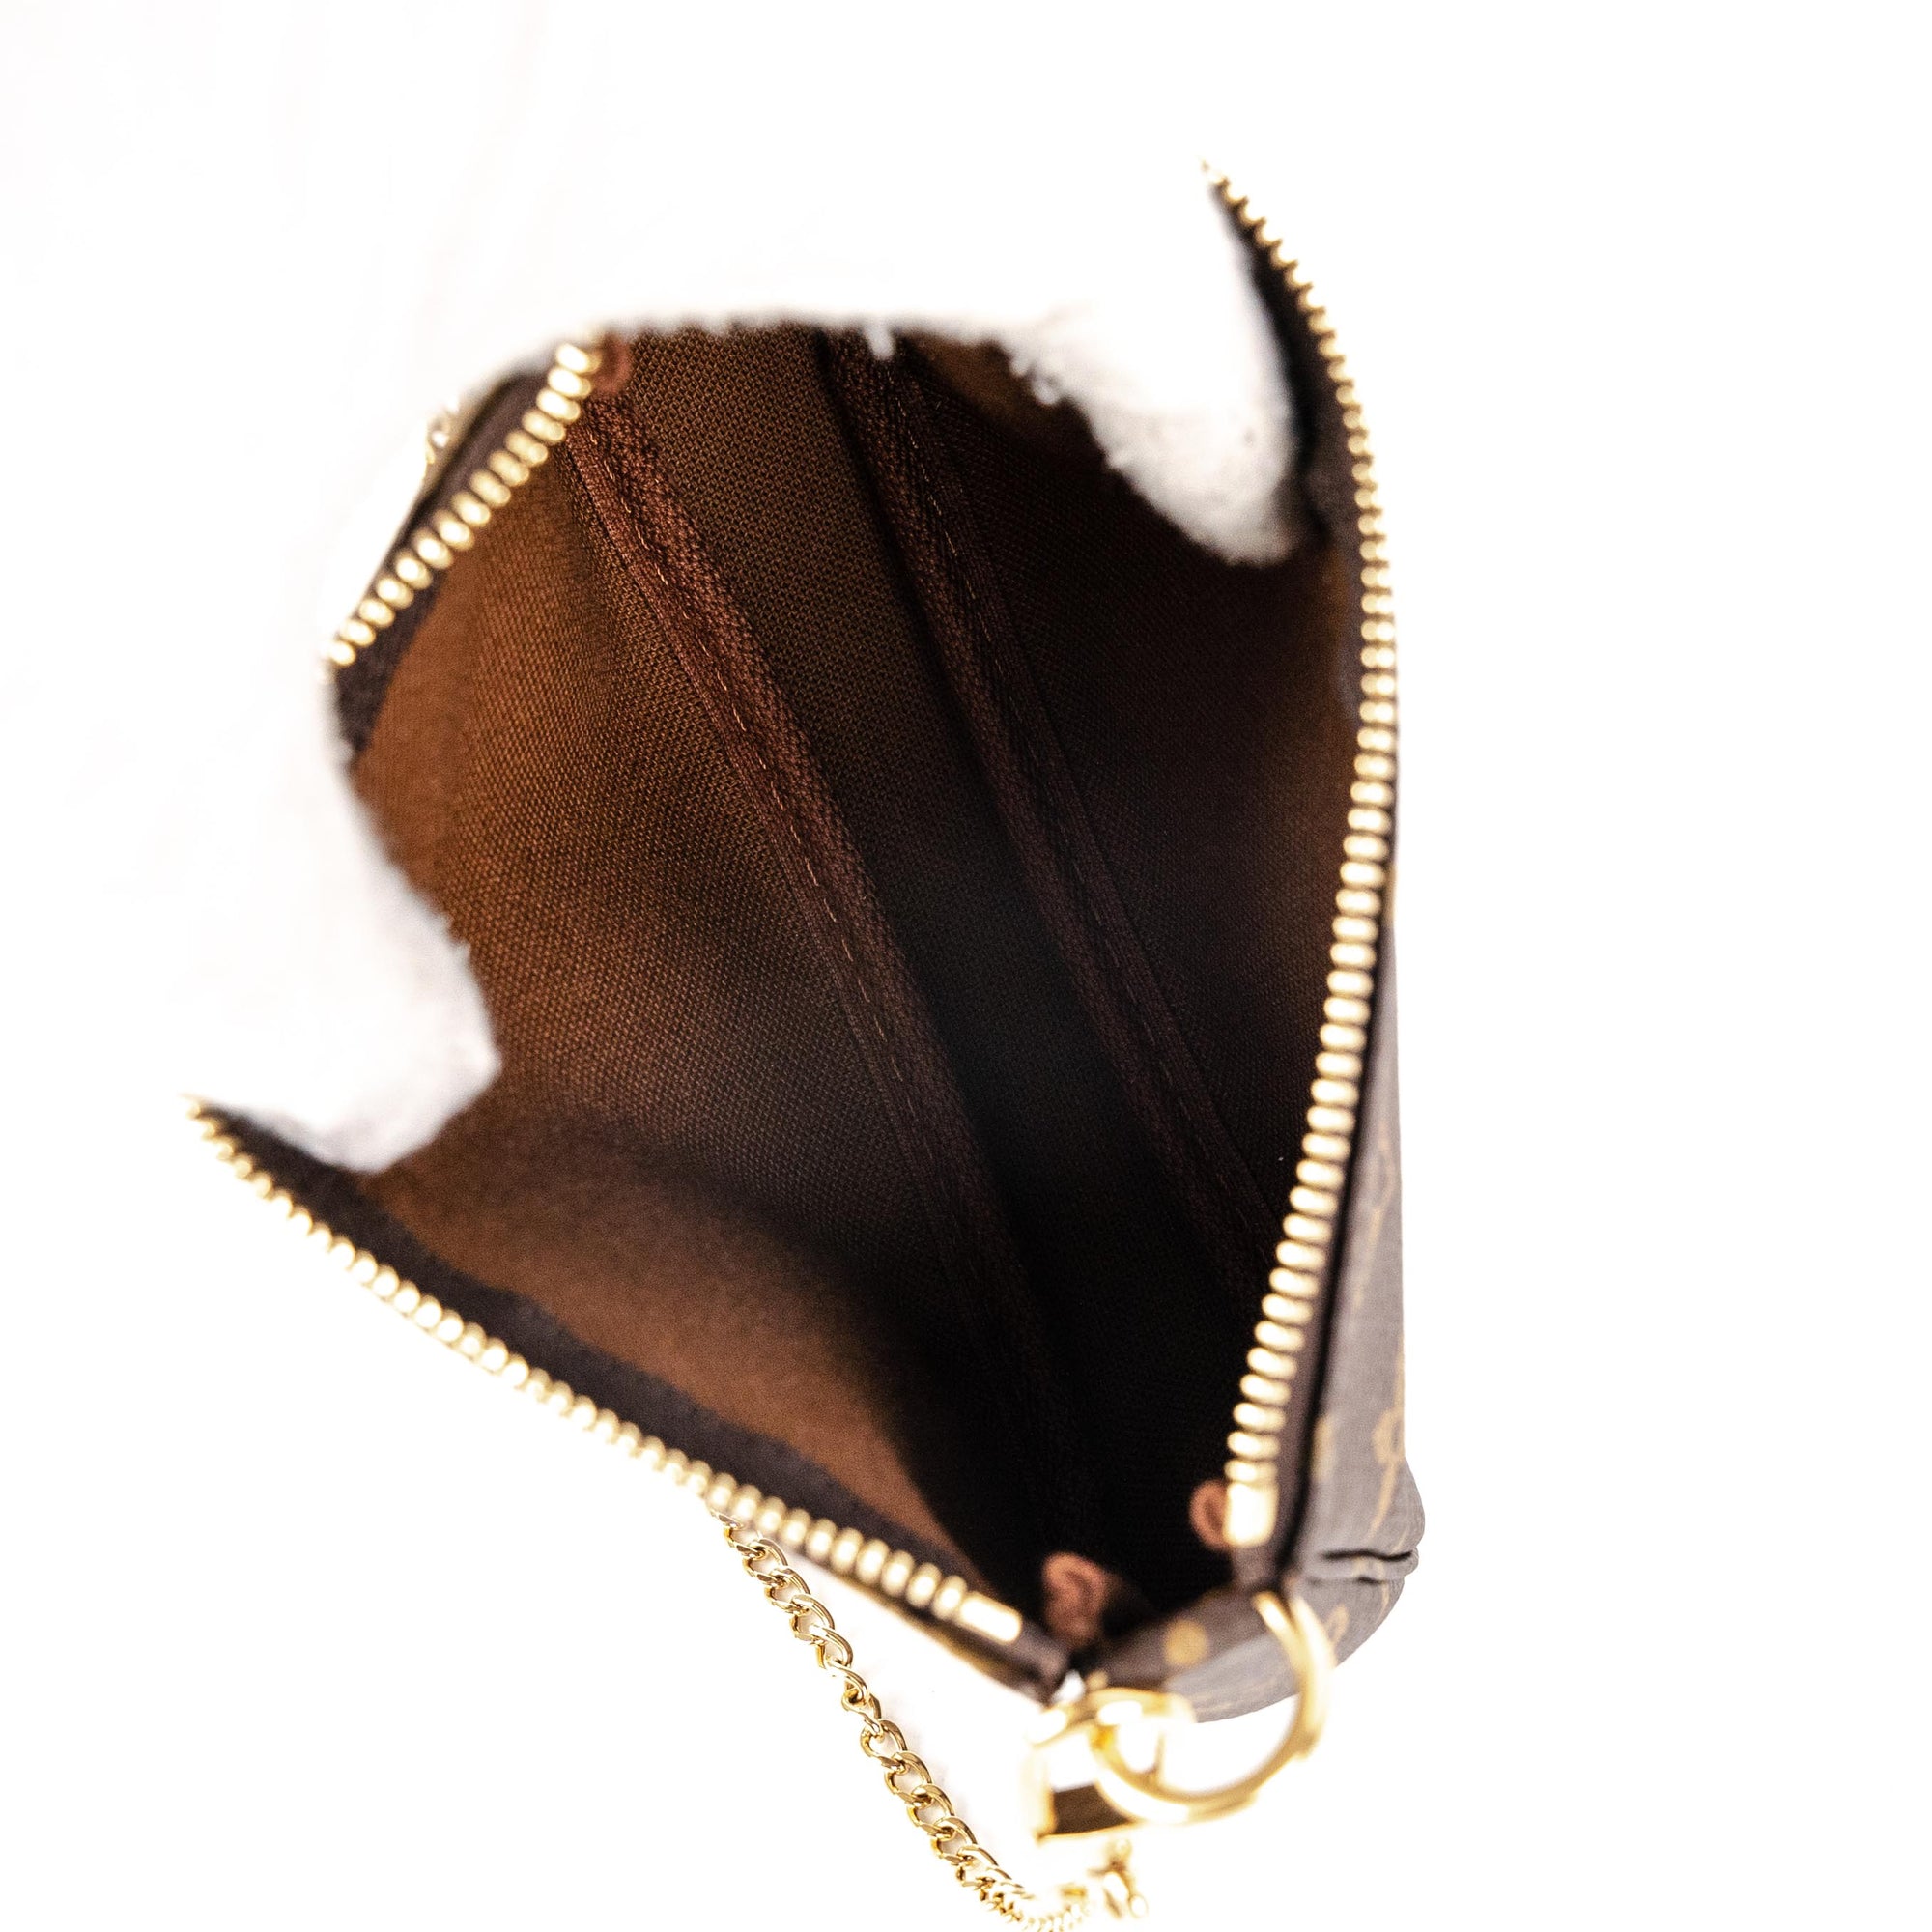 Louis Vuitton Monogram Mini Pochette Accessoires - Brown Mini Bags, Handbags  - LOU760012